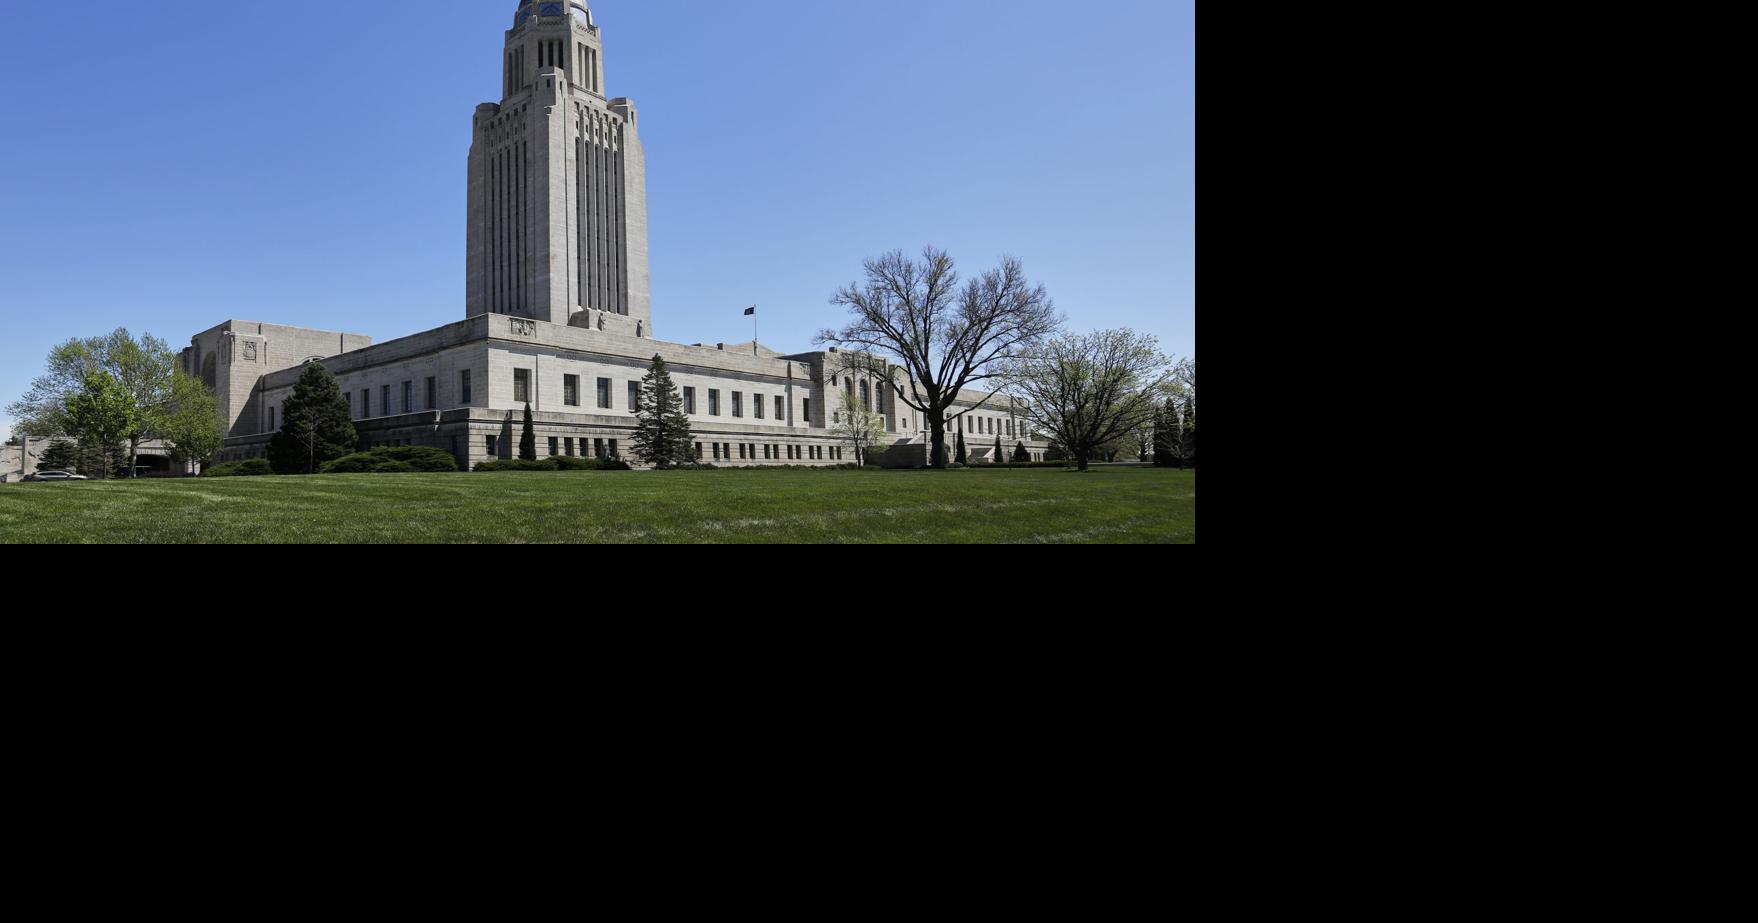 In April, Nebraska’s economic index rebounds to growth